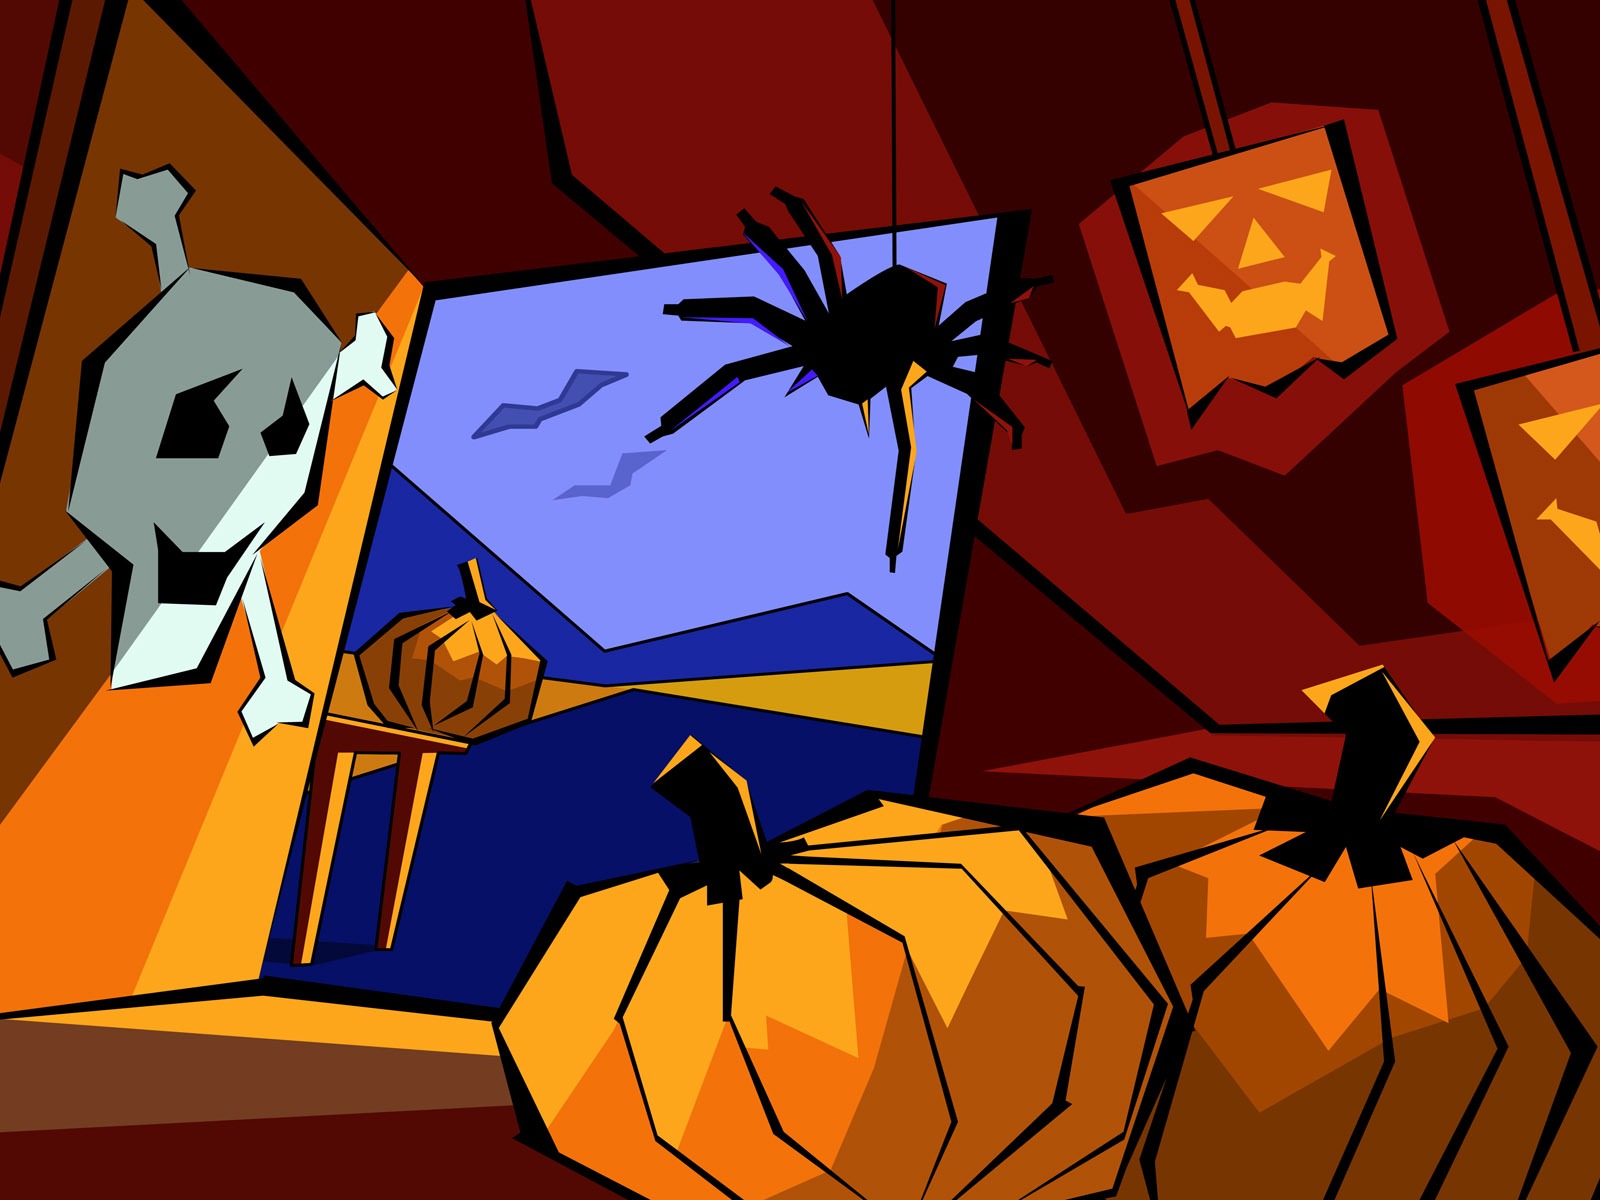 Fondos de Halloween temáticos (5) #15 - 1600x1200